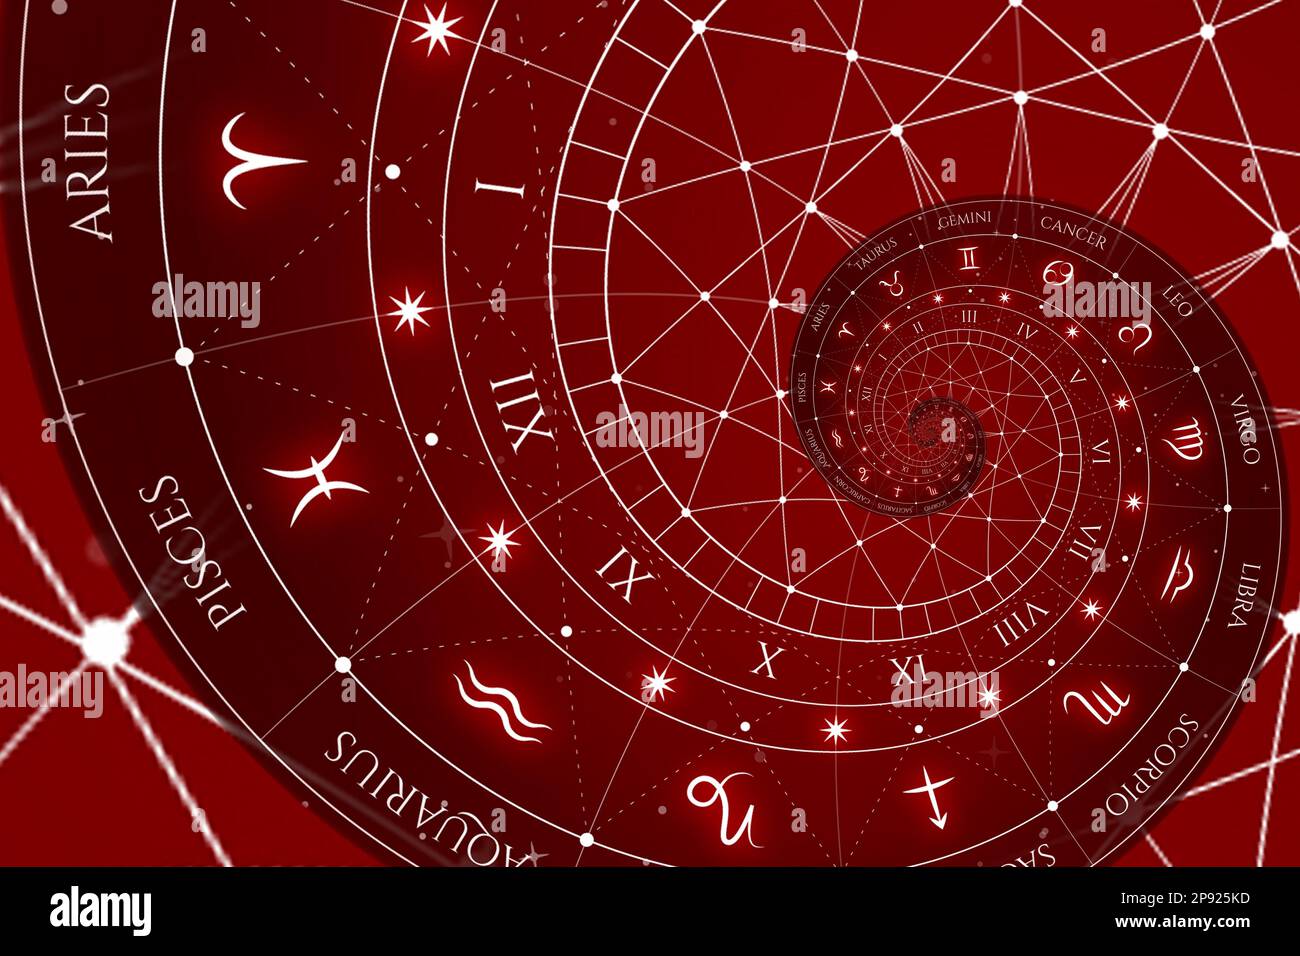 Signes du zodiaque arrière-plan de l'horoscope. Concept de fantaisie et de mystère - rouge Banque D'Images